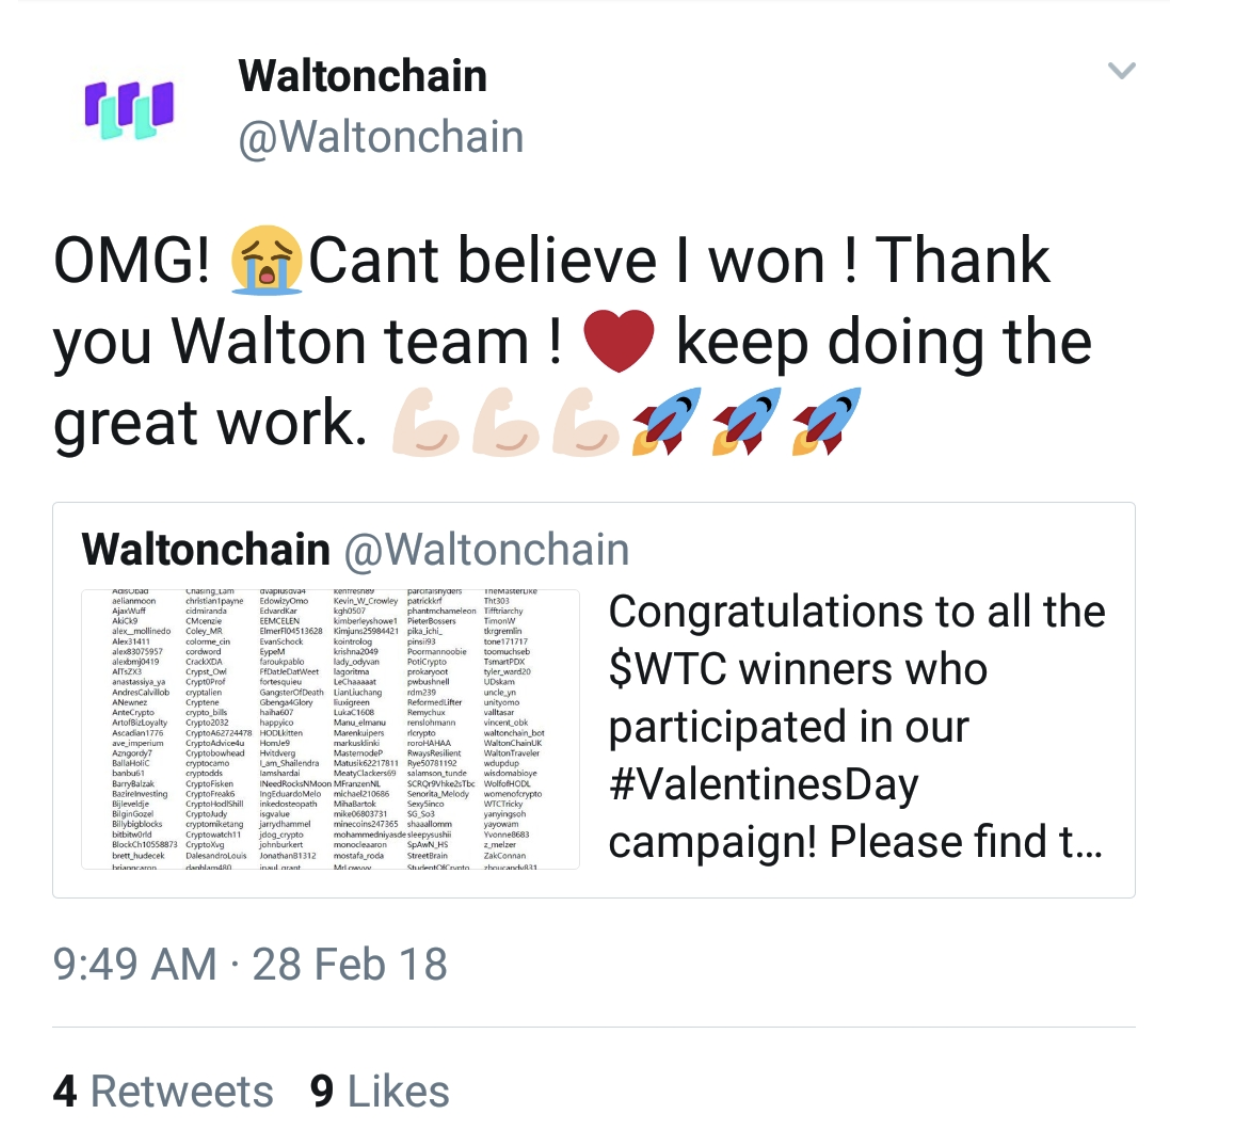 How a Single Tweet Wiped $90 Million off Waltonchain’s Market Cap